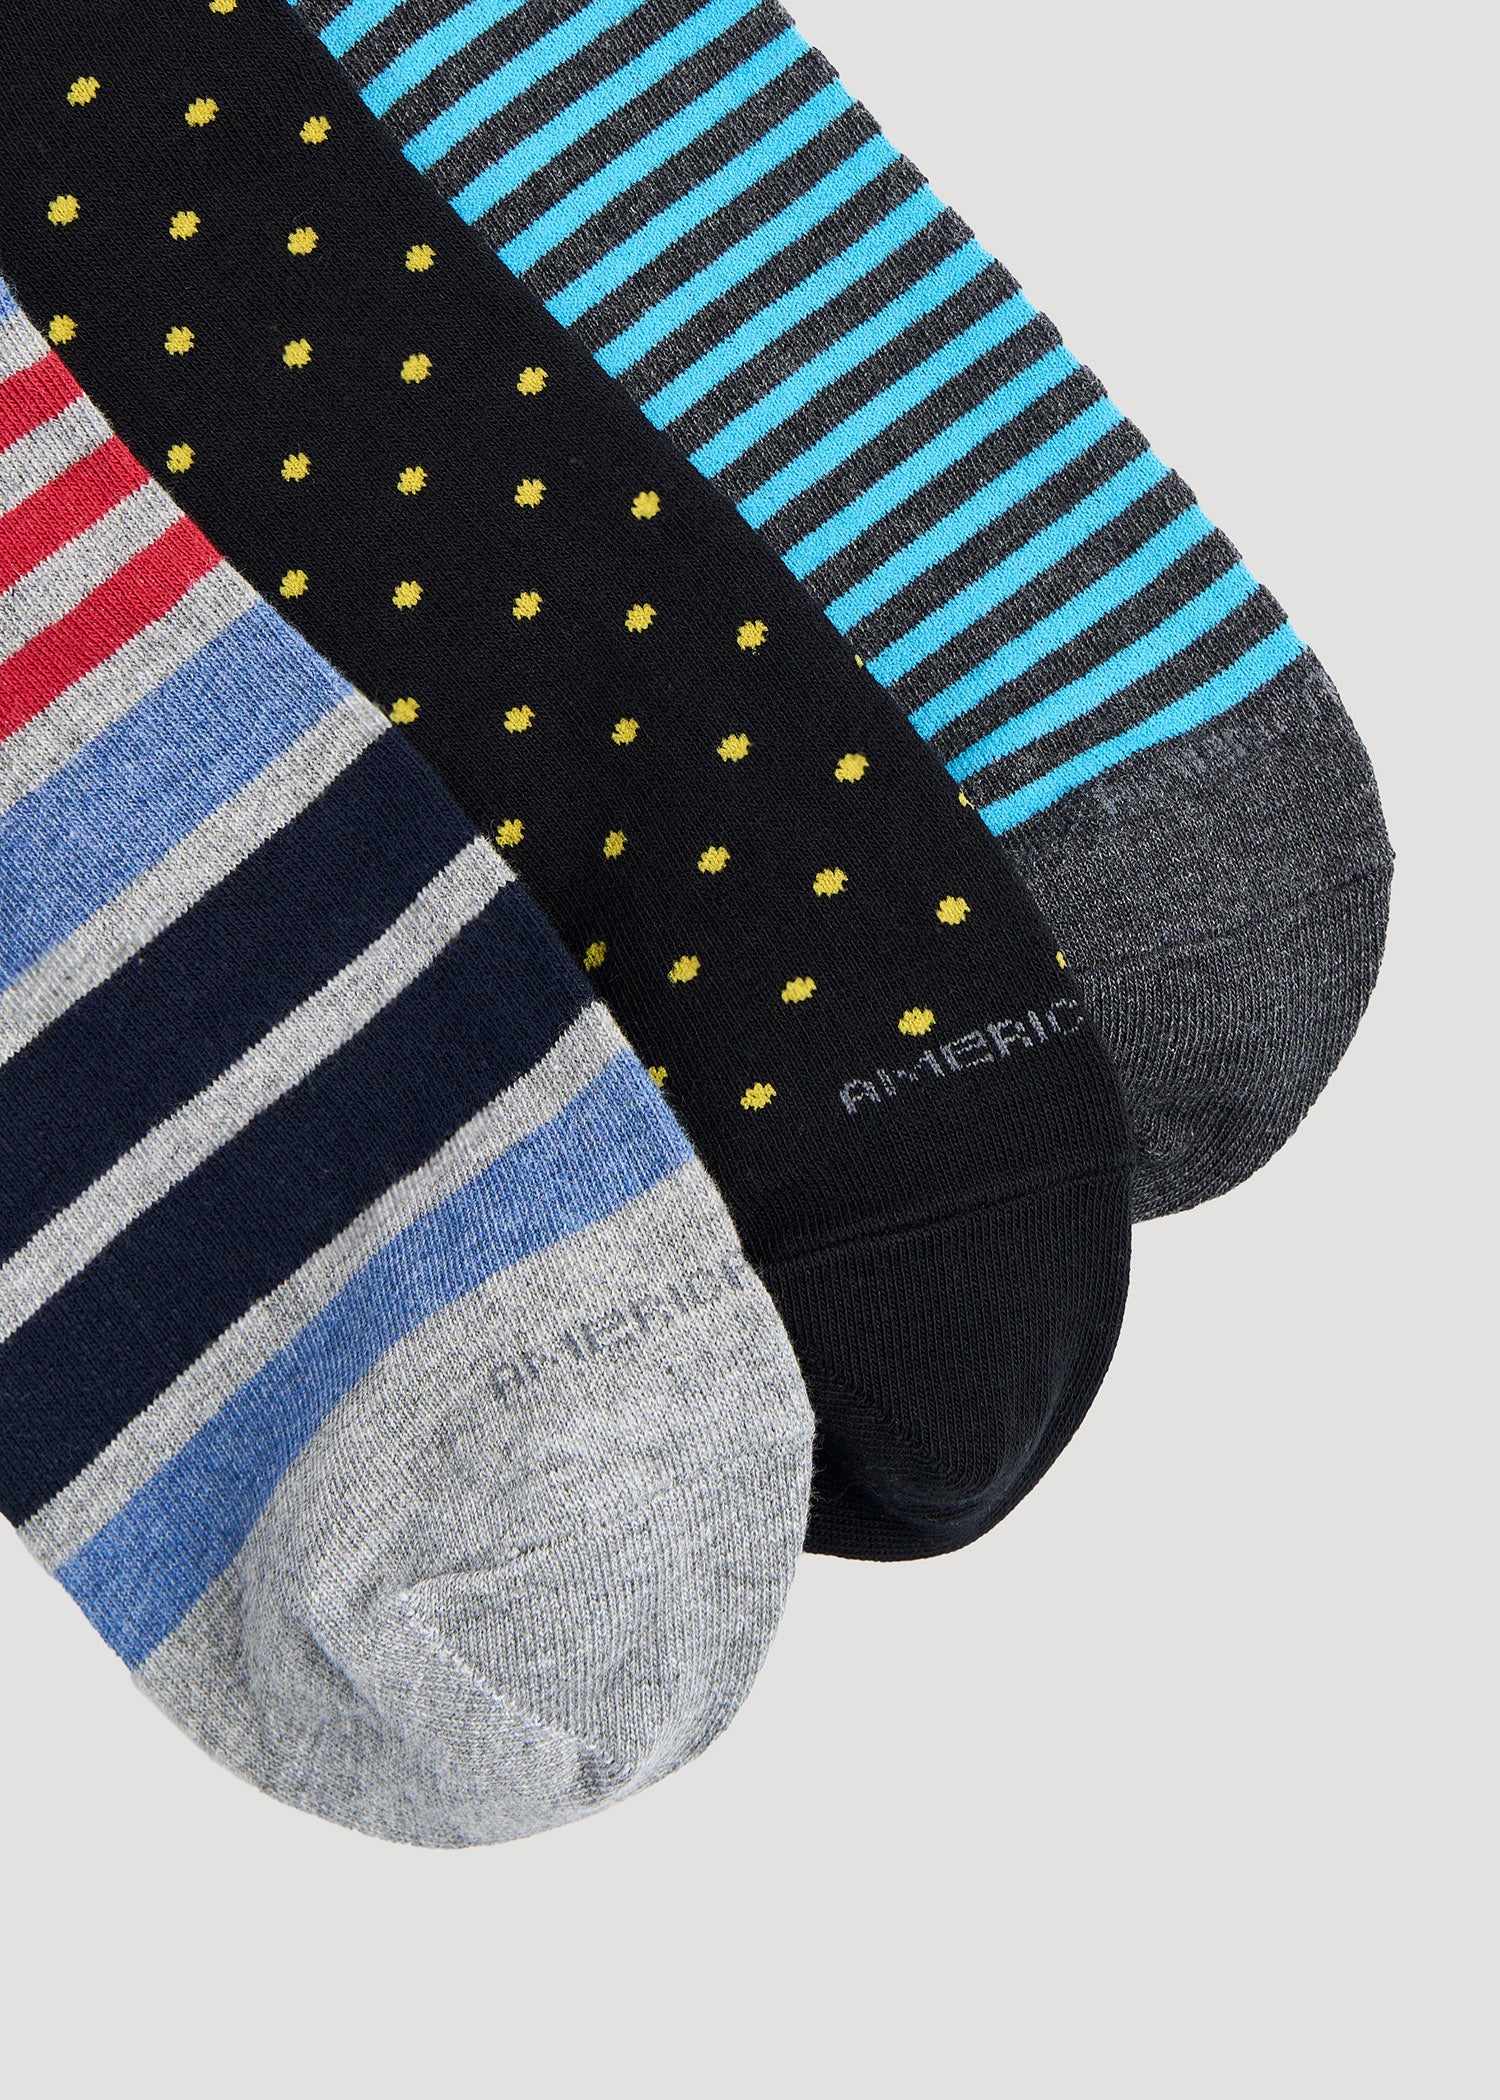    American-Tall-Mens-XL-Dress-Socks-Size-14-17-3-Pack-A-Detail